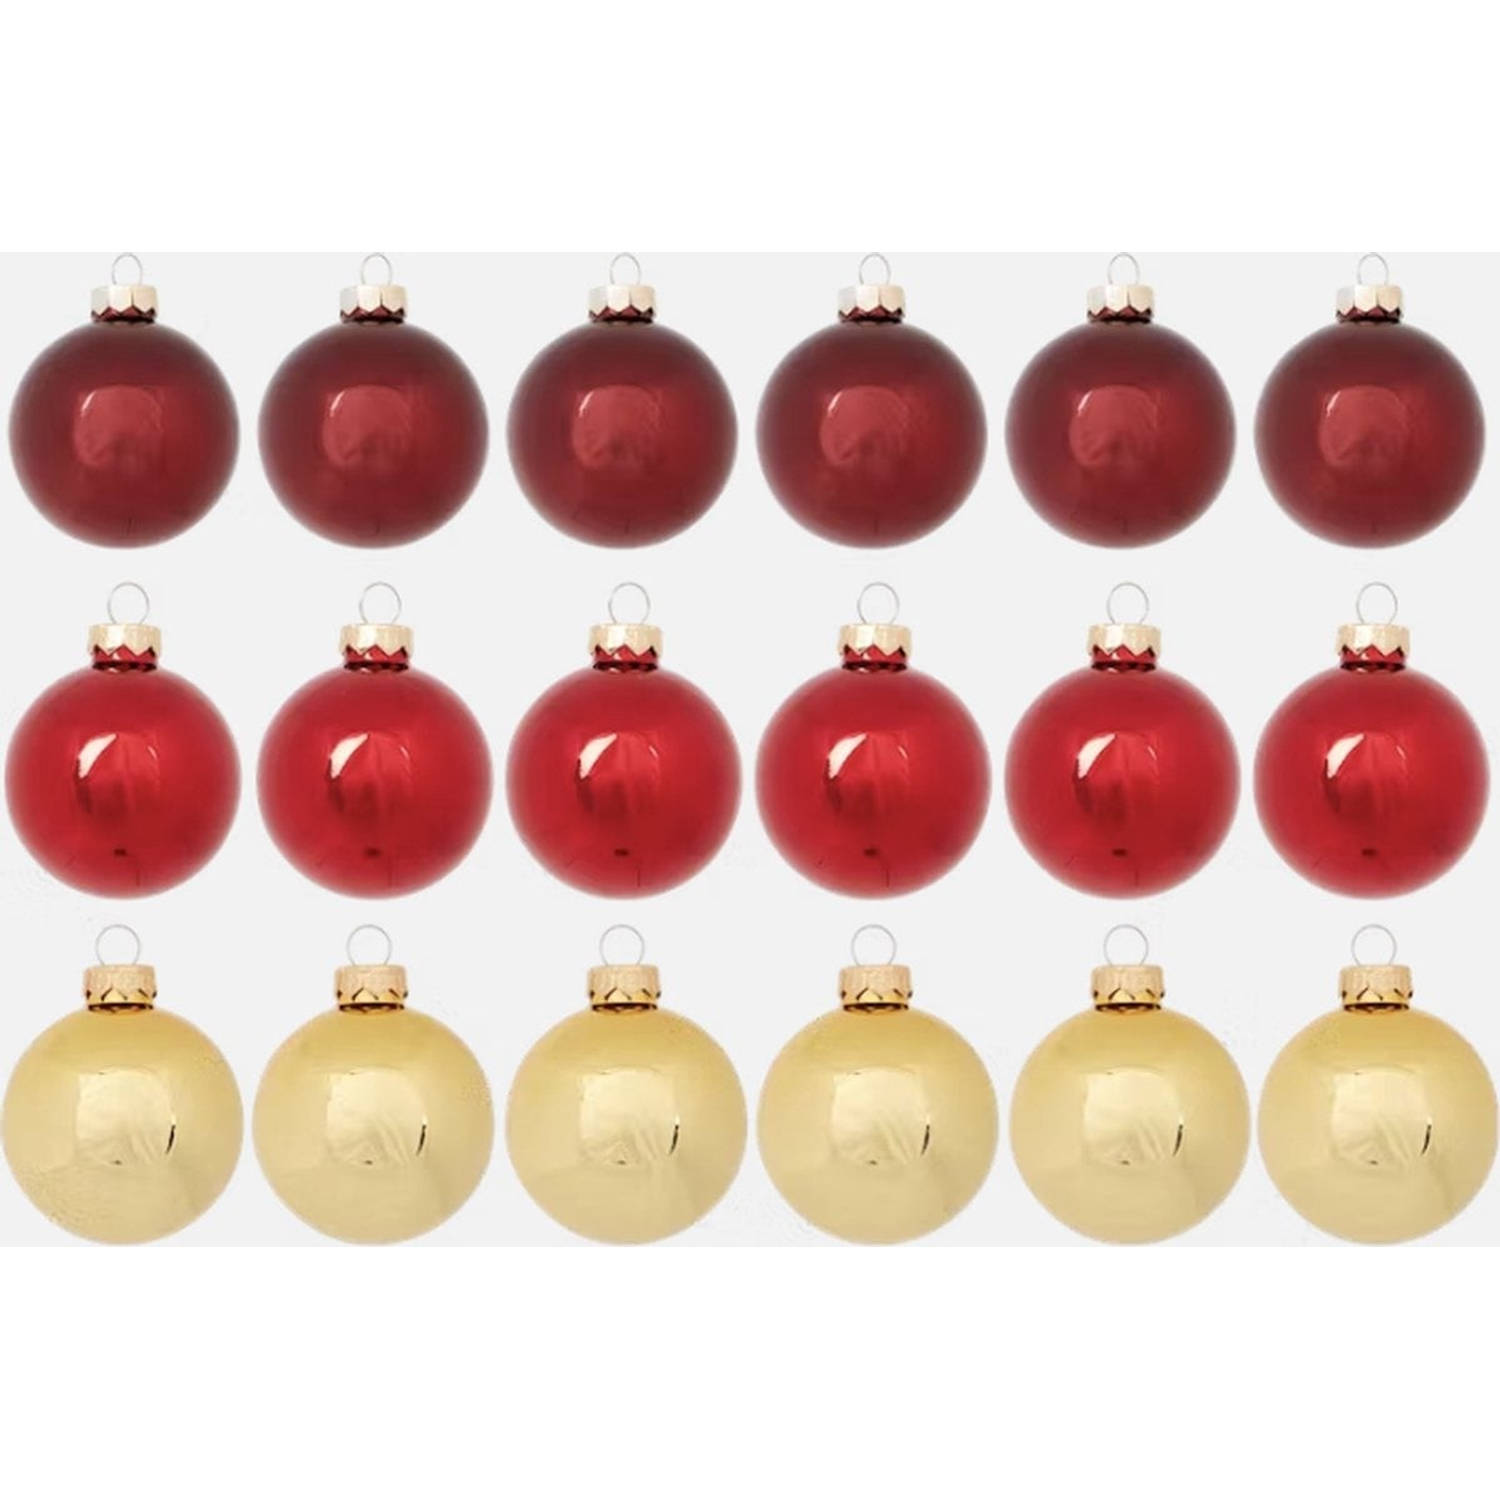 Xmas Baubles - Kerstballen - Echt Glas - 18x5,7cm - Kerstbal - Kerstballen Goud - Goud/Rood/Bordeux